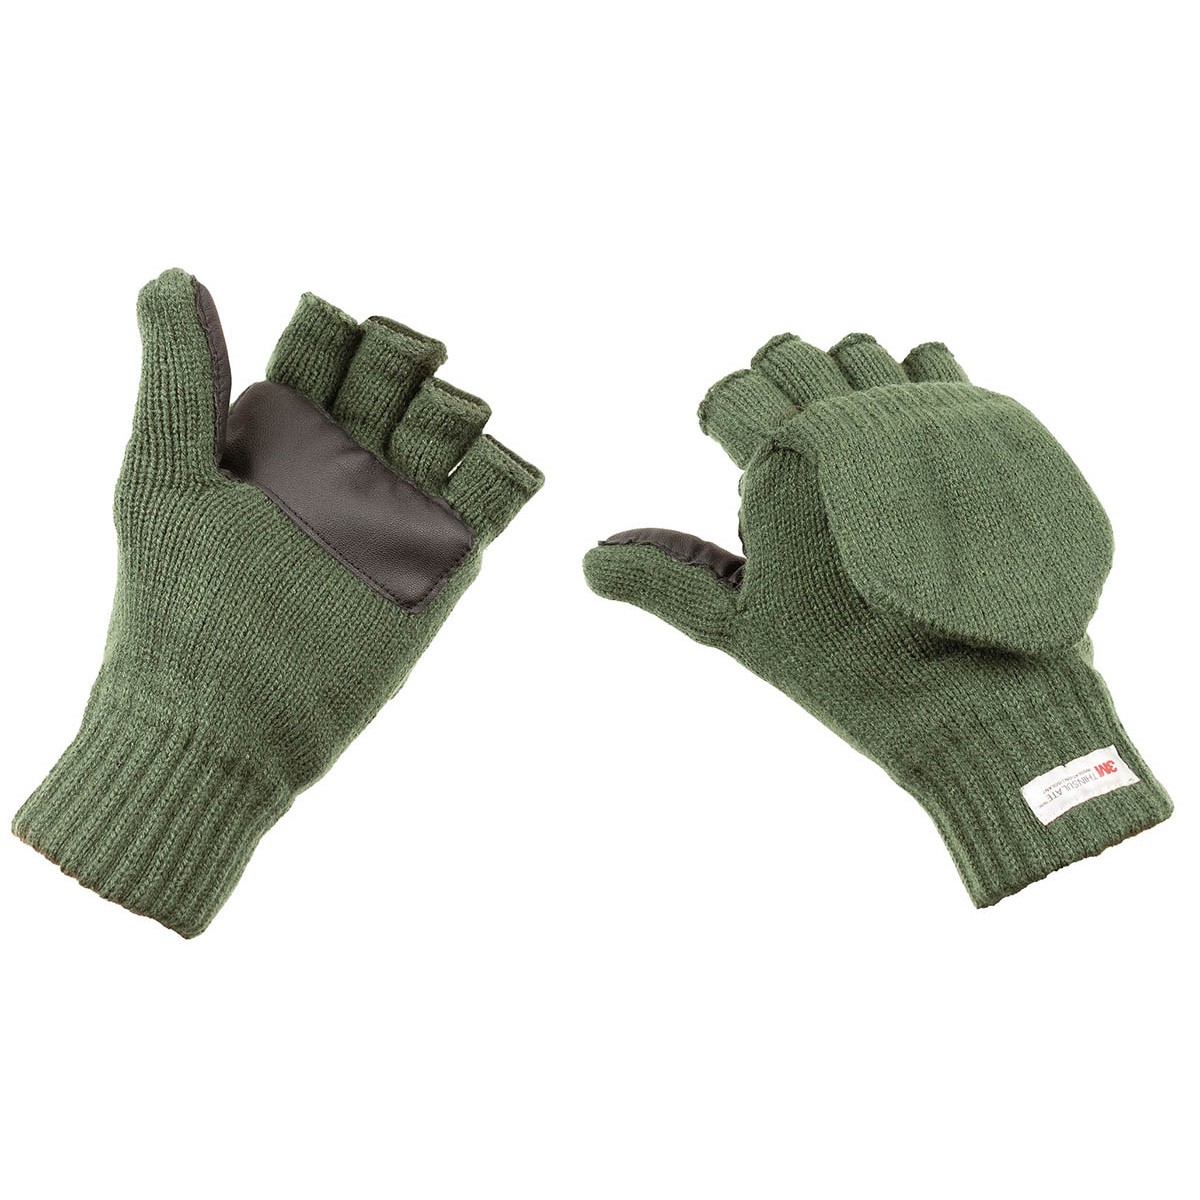 Pletené rukavice bez prstů s podšívkou MFH Thinsulate - olivové, S